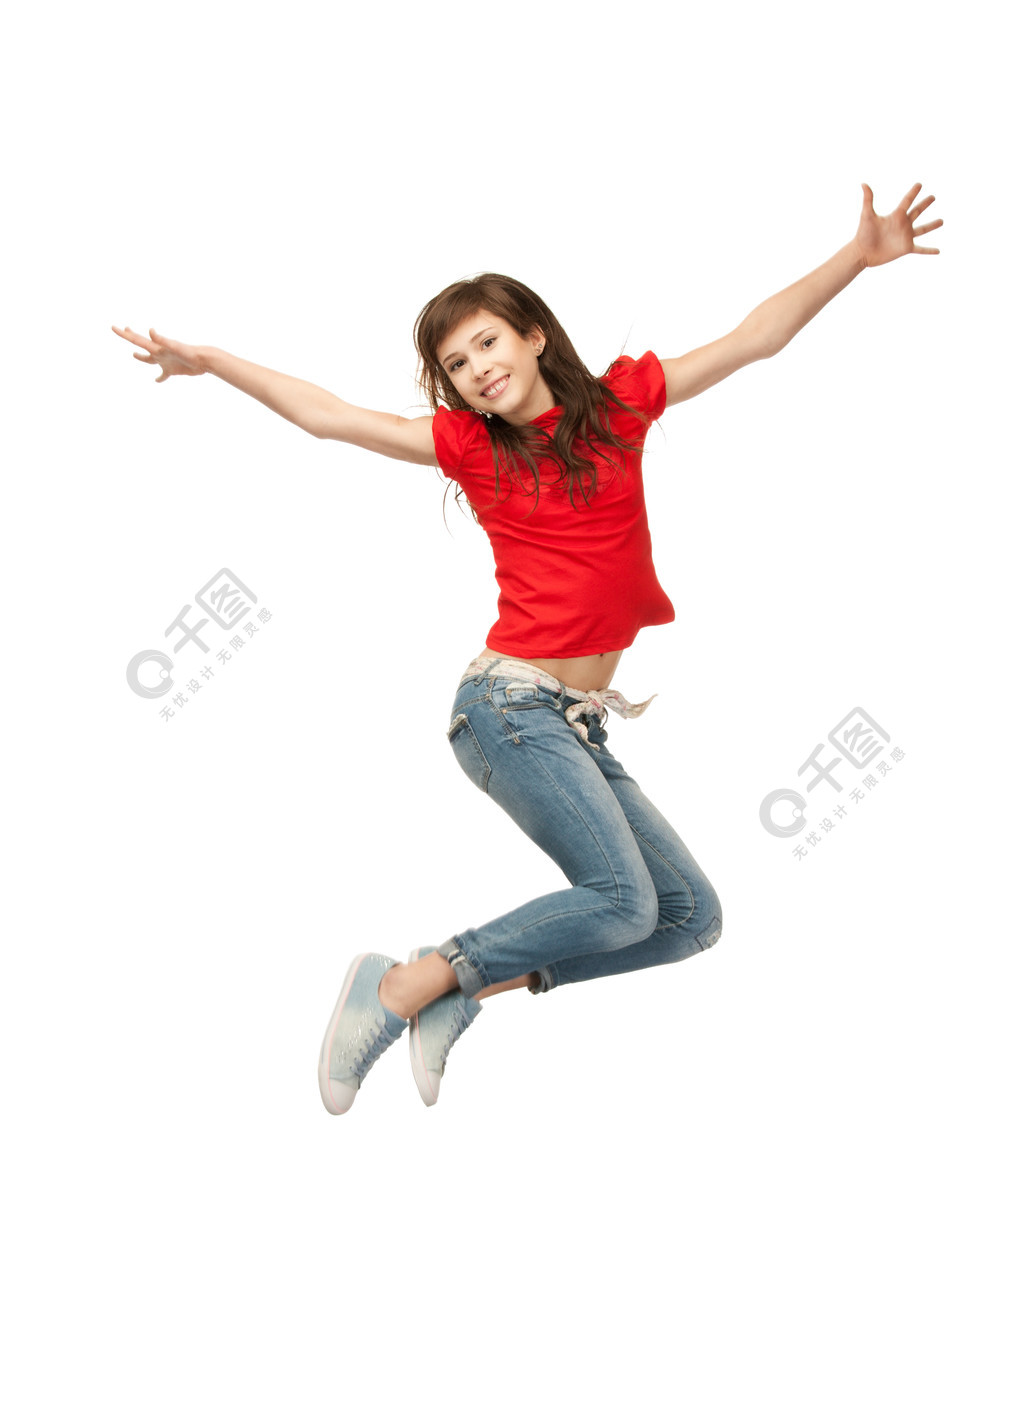 快乐跳跃的少女的明亮的图片人物形象免费下载_jpg格式_3450像素_编号